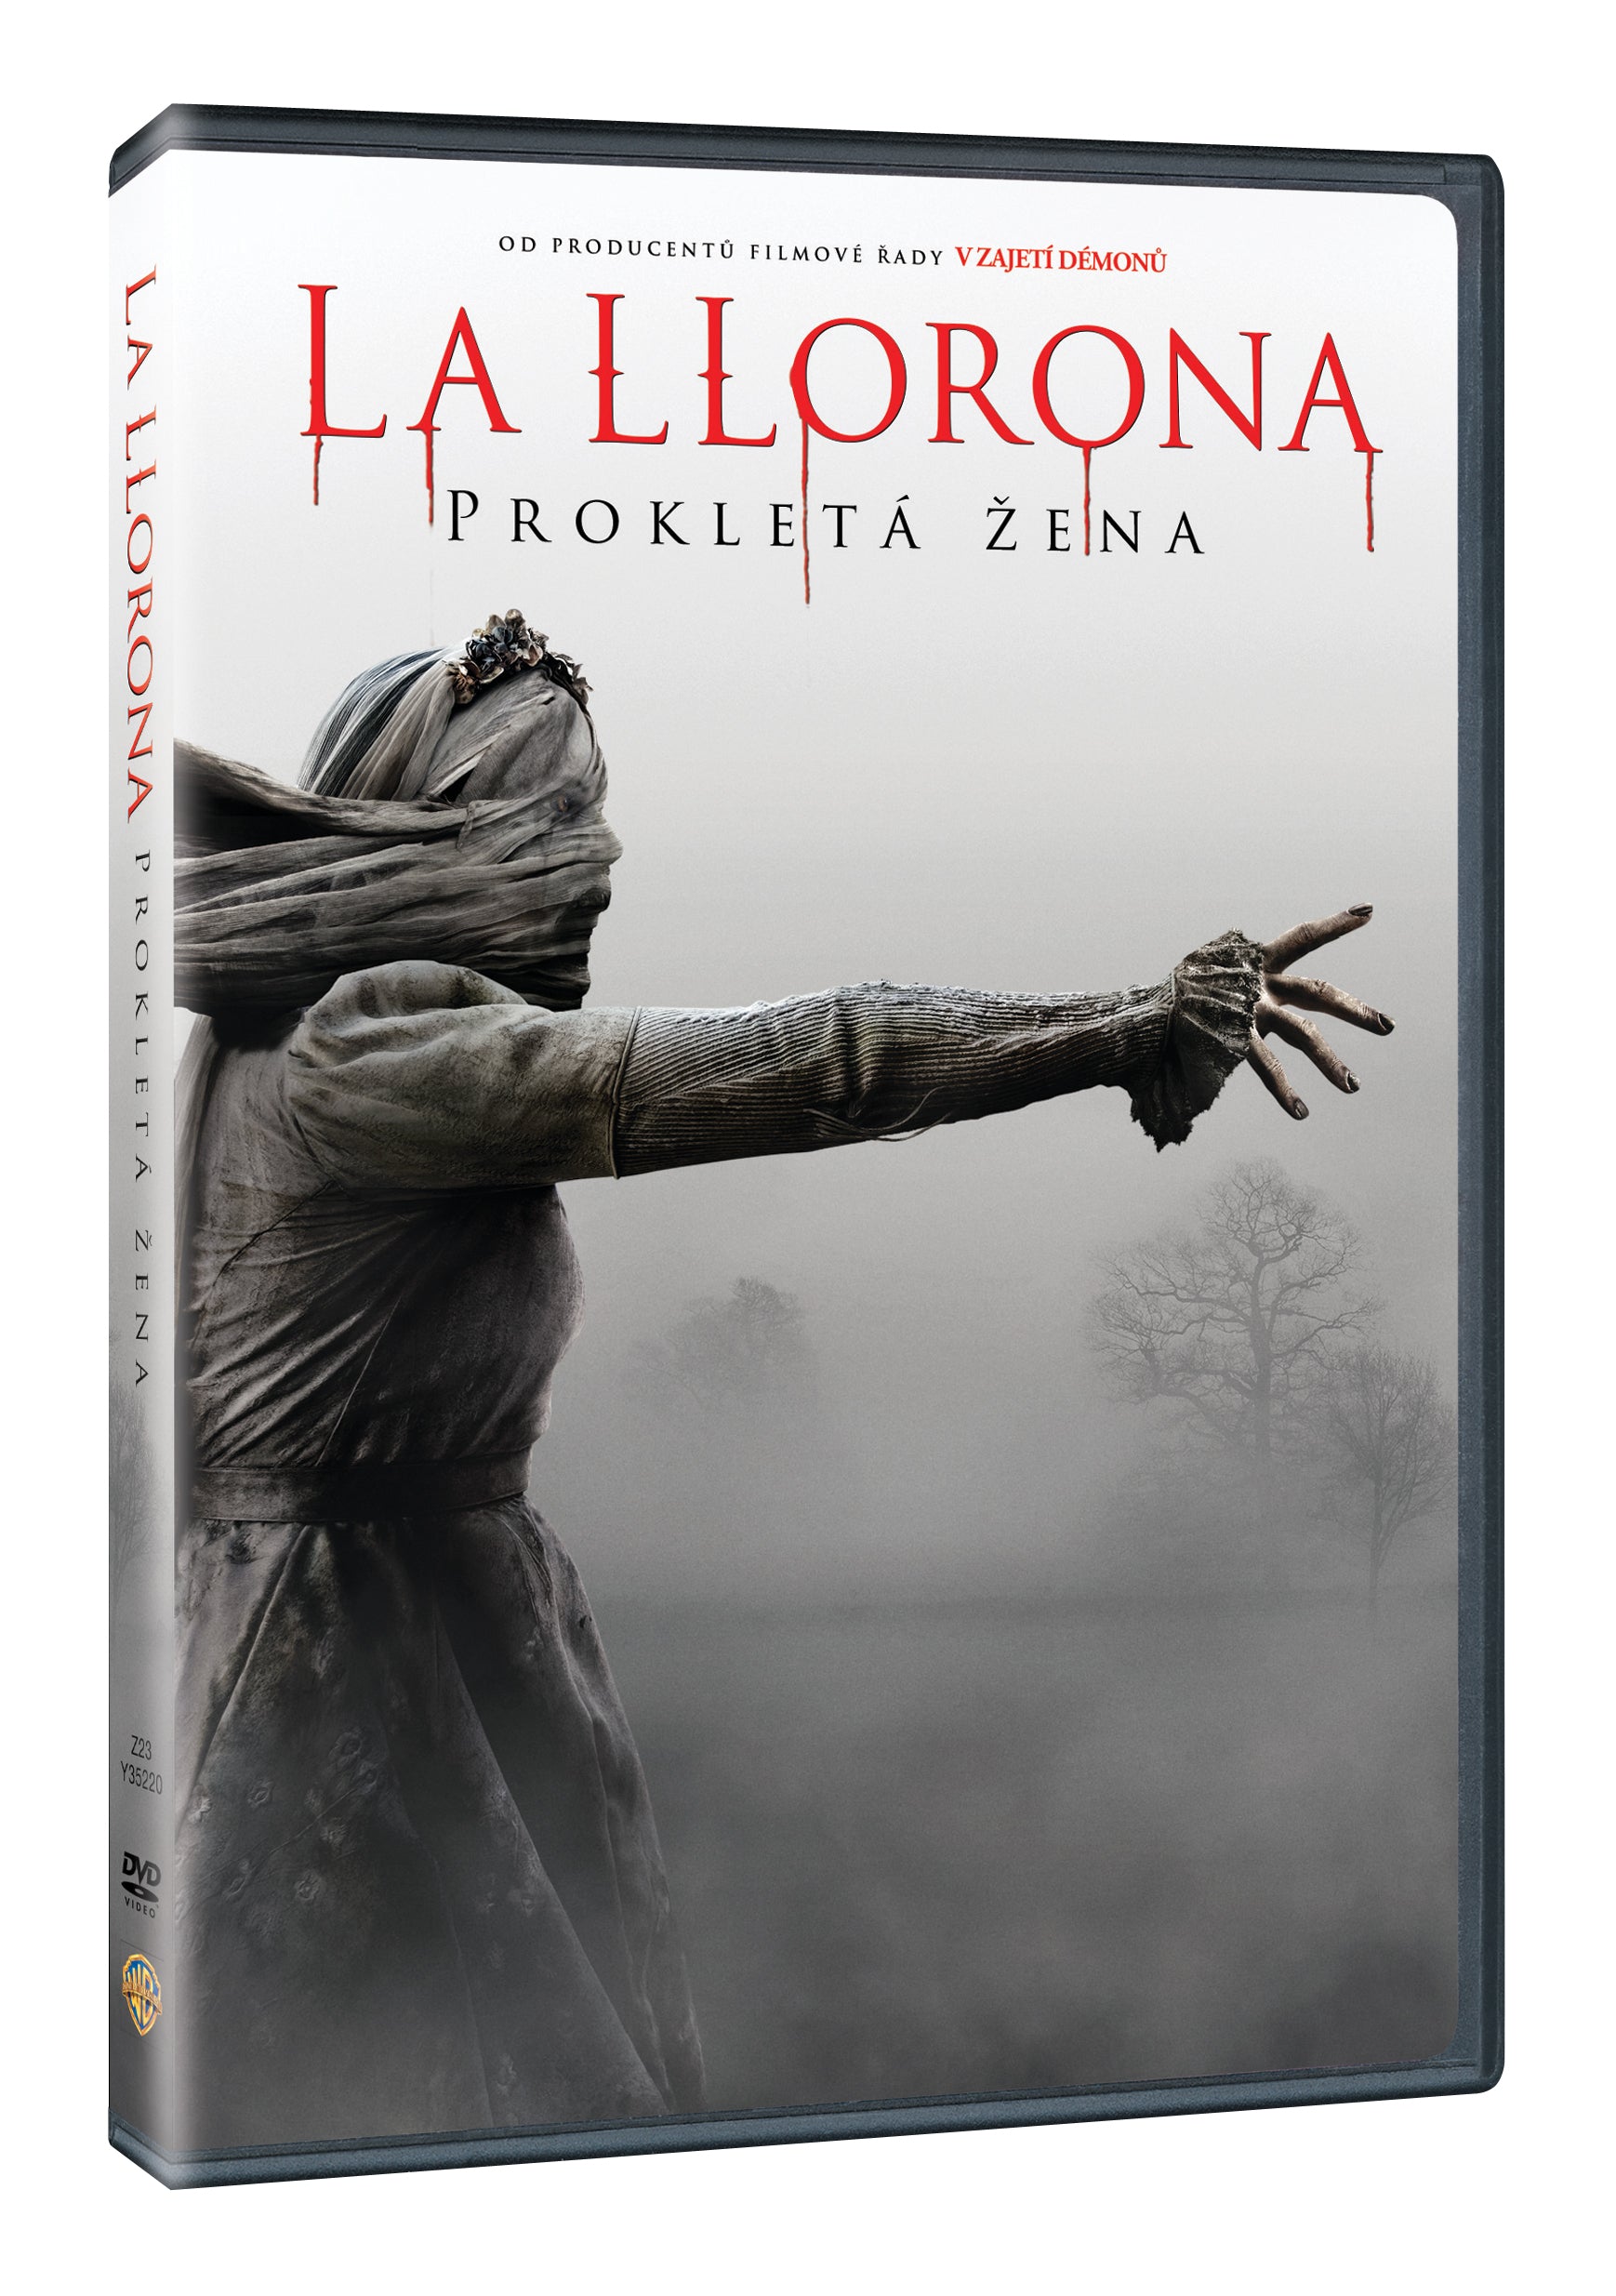 The Curse of La Llorona / The Curse of the Weeping Woman / La Llorona: Prokleta zena